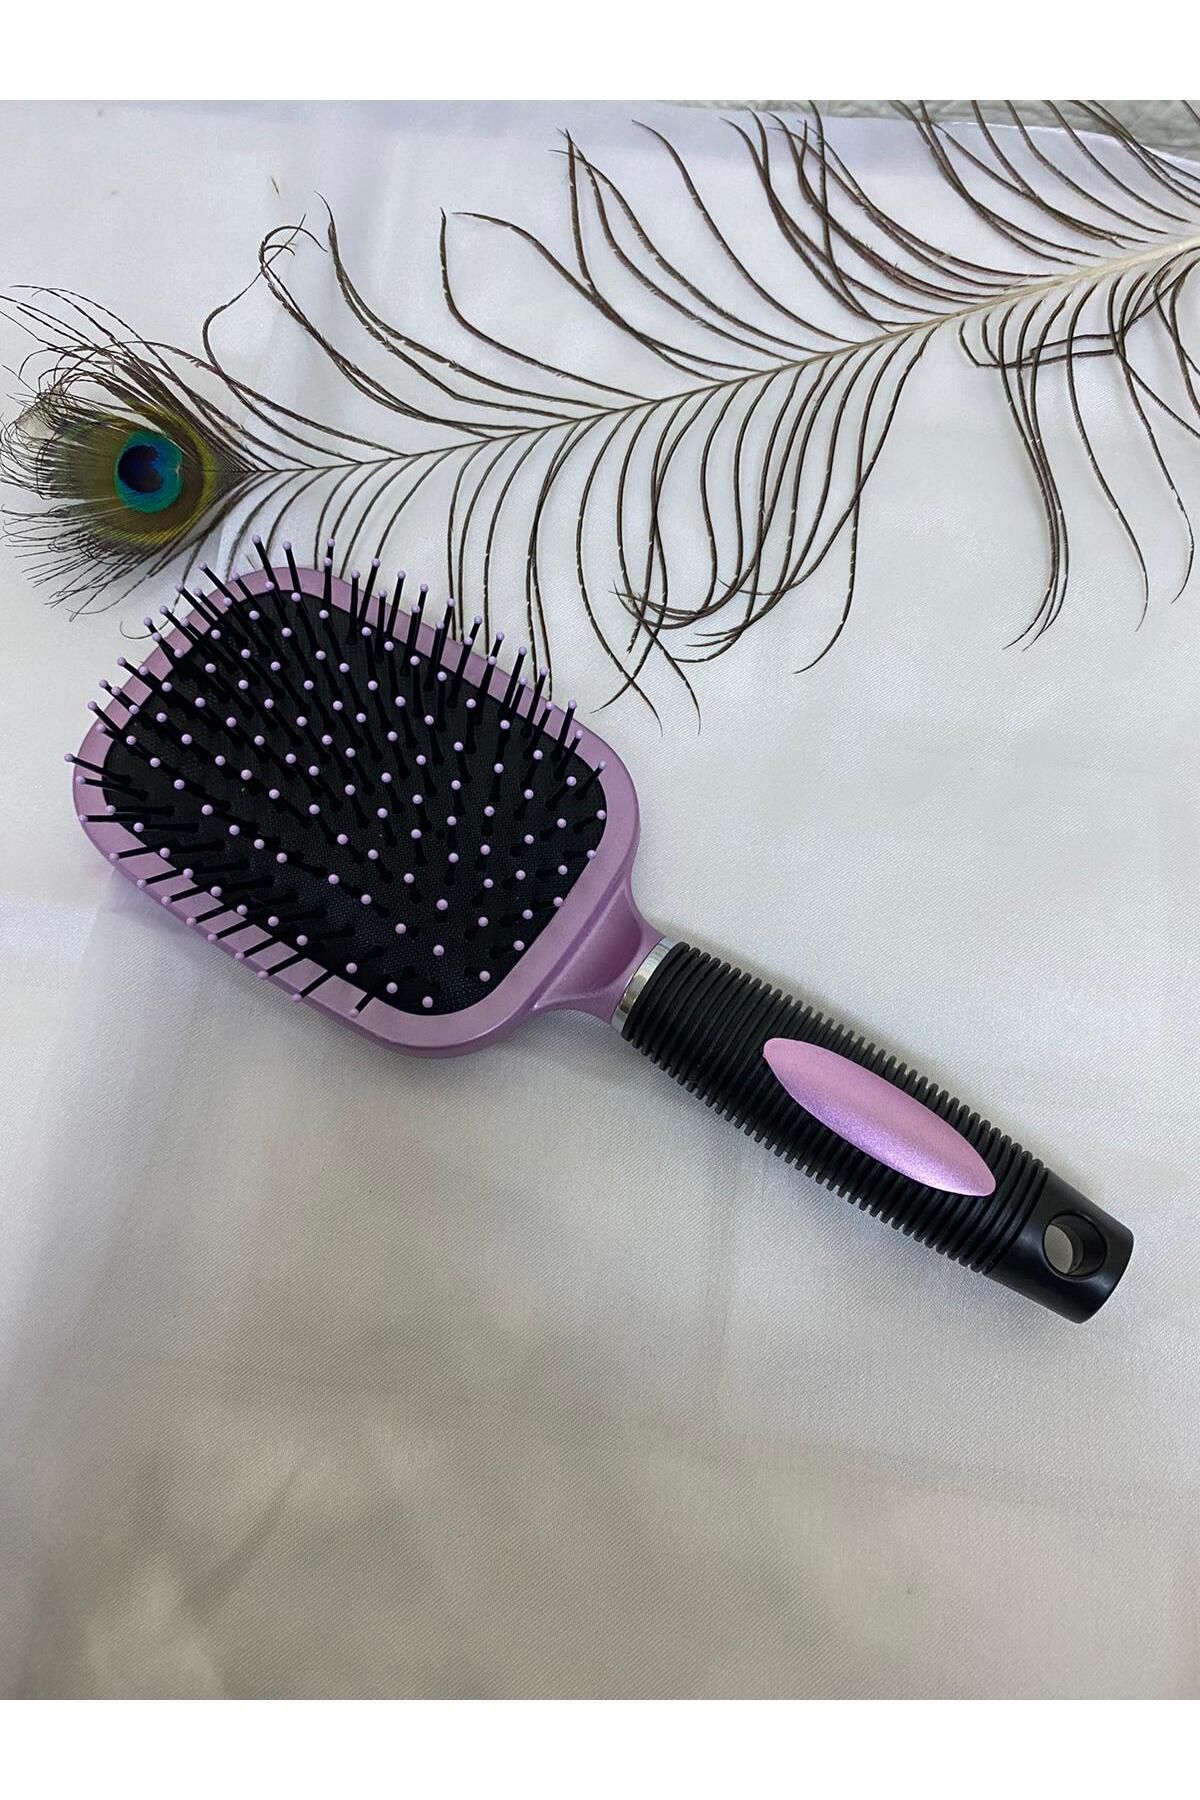 sema aksesuar Aynalı Tarak - Saç Açma Fırçası - Kadın Aynalı Düğüm Açıcı Saç Fırçası